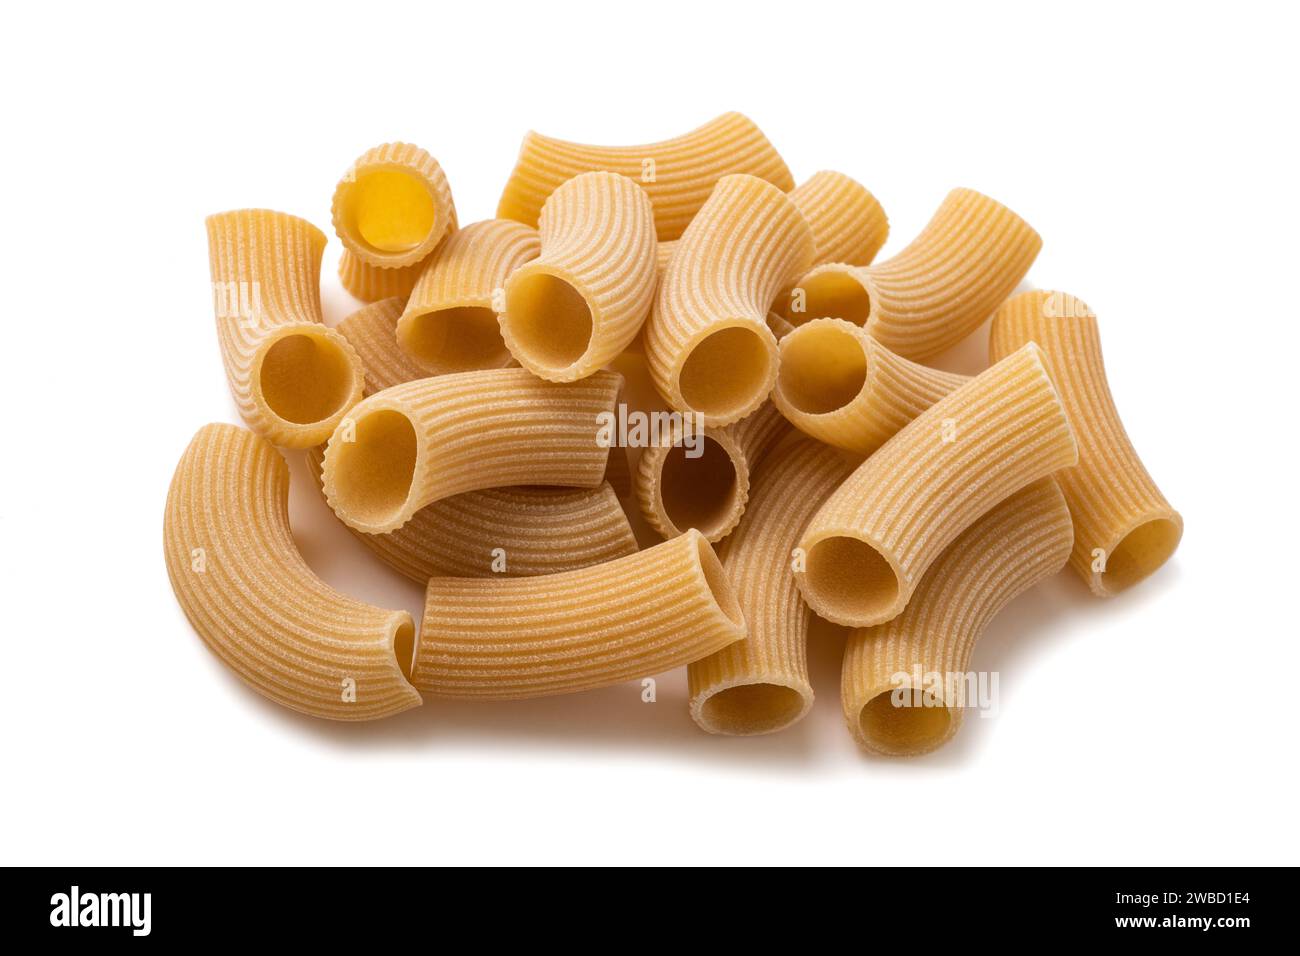 Rigatoni pasta isolated on white background Stock Photo